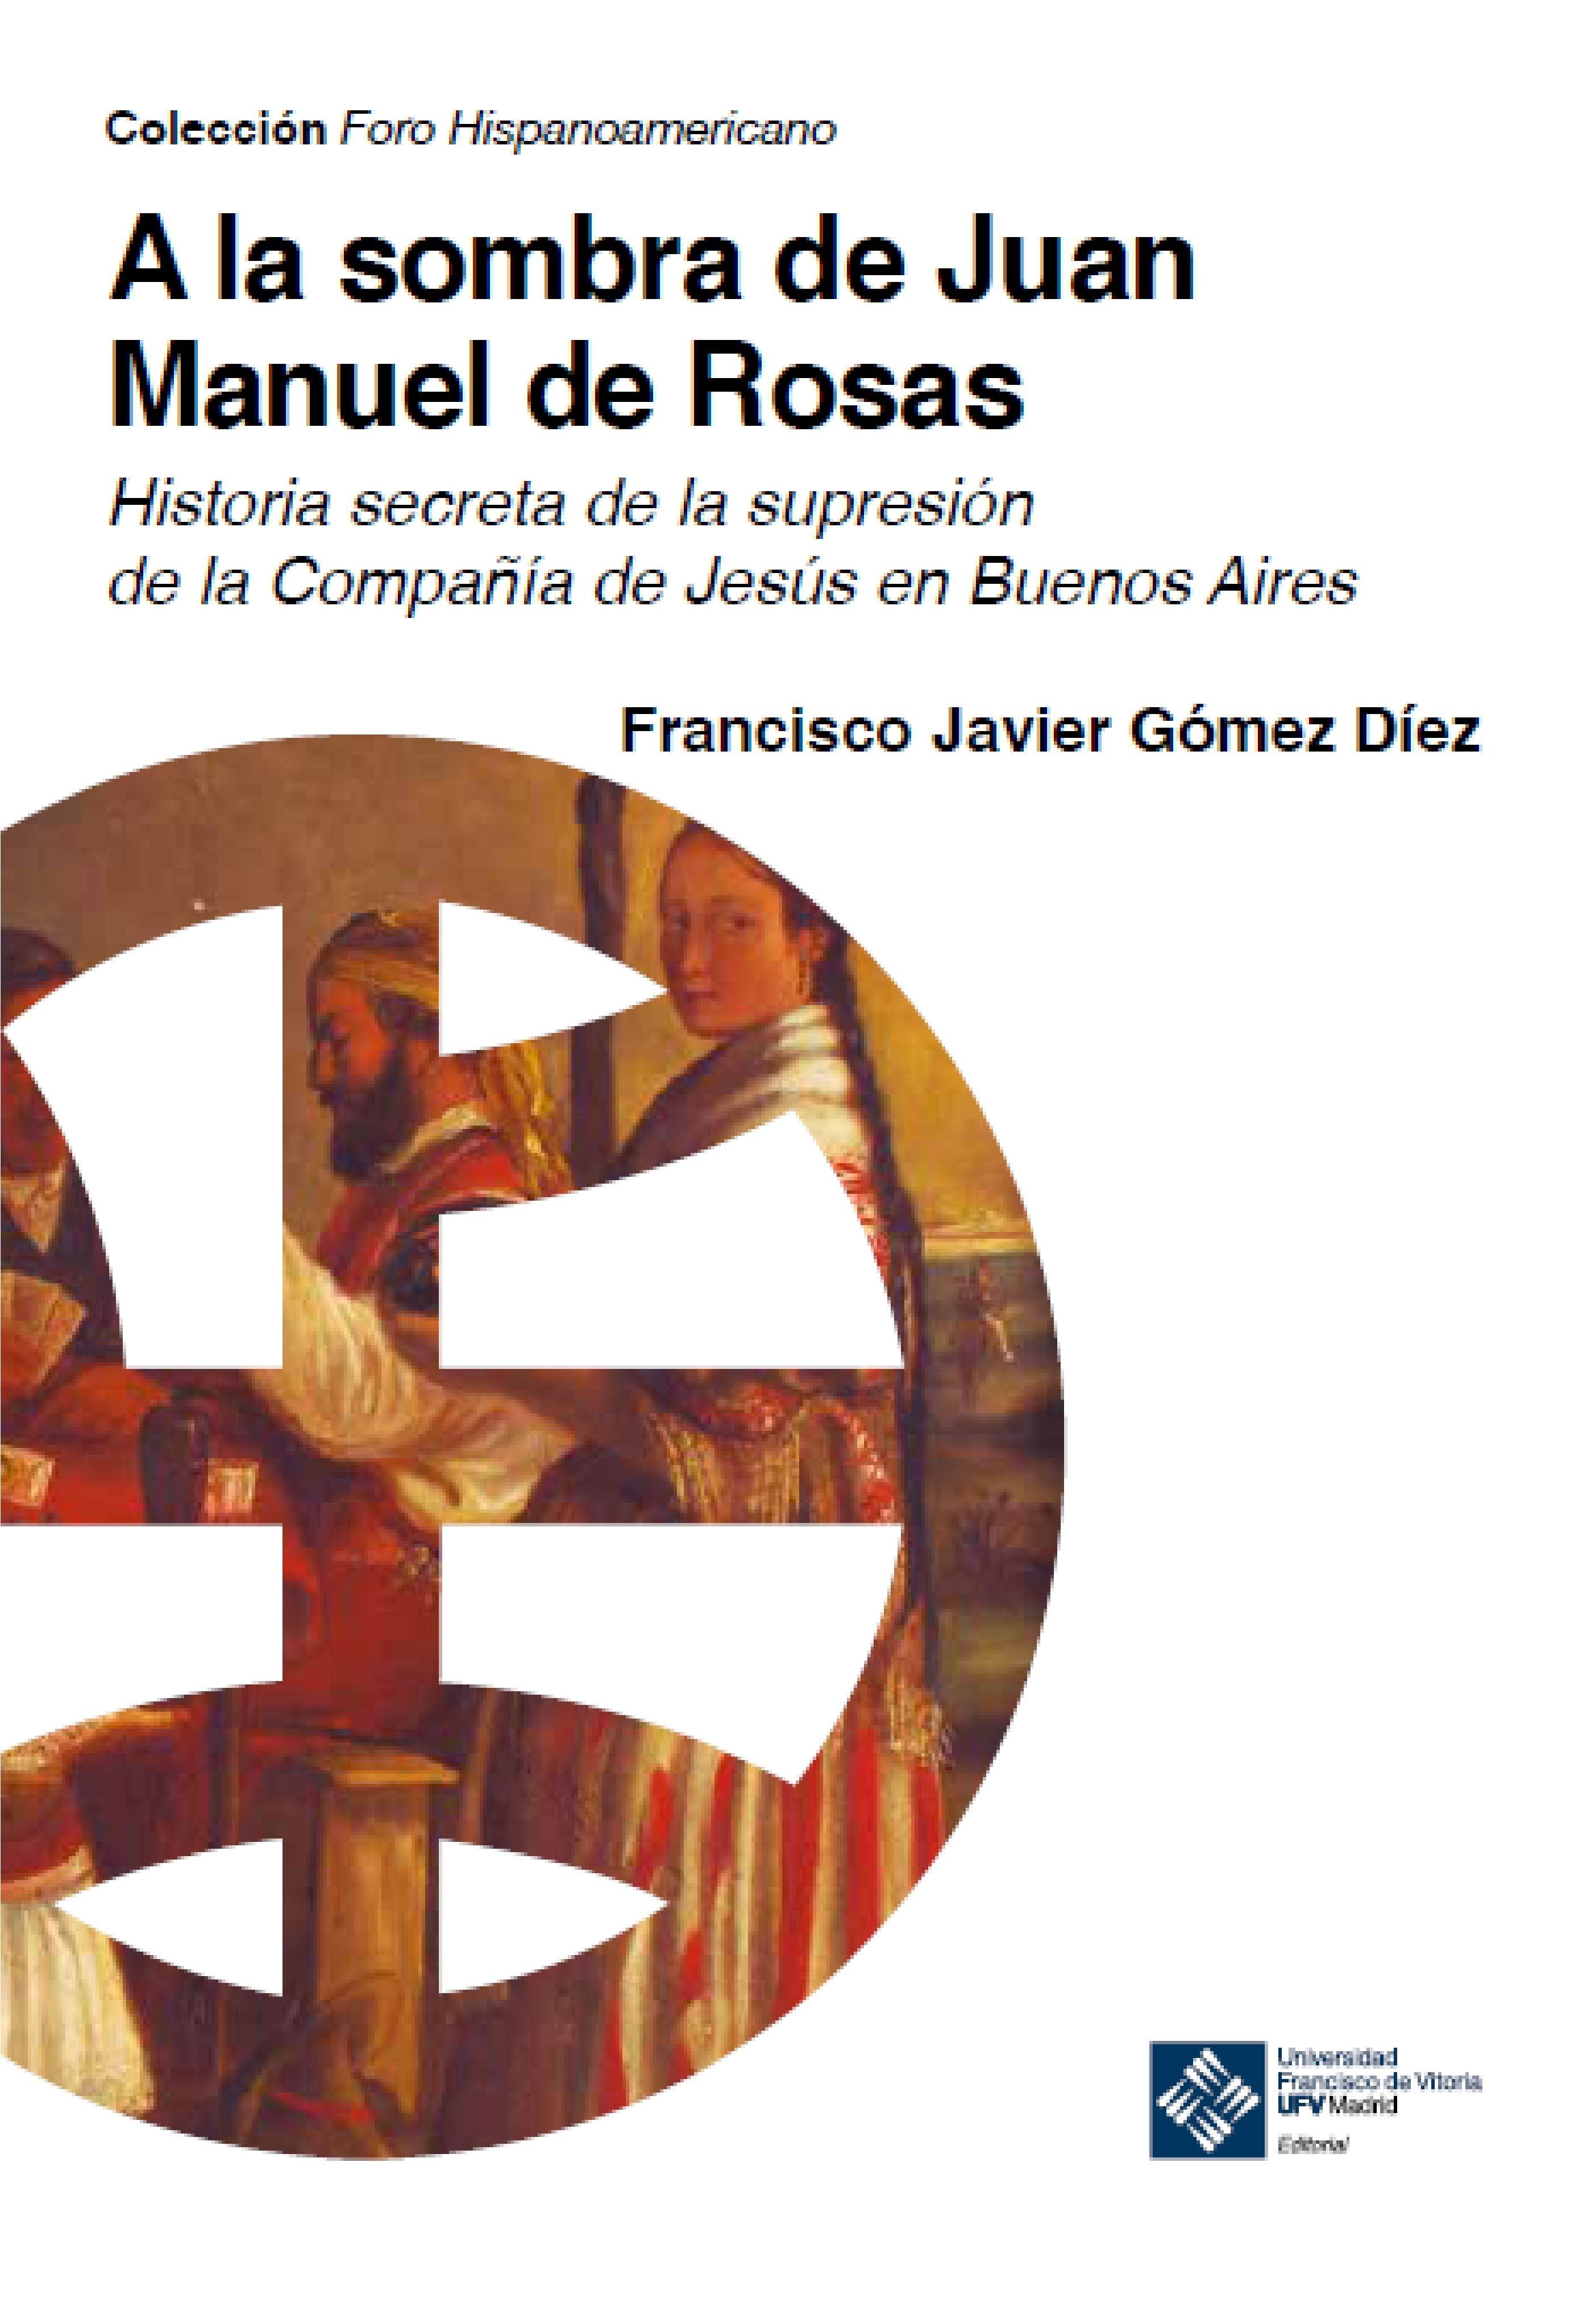 A la sombra de Juan Manuel de Rosas "Historia secreta de la supresión de la Compañía de Jesús en Buenos Aires". 